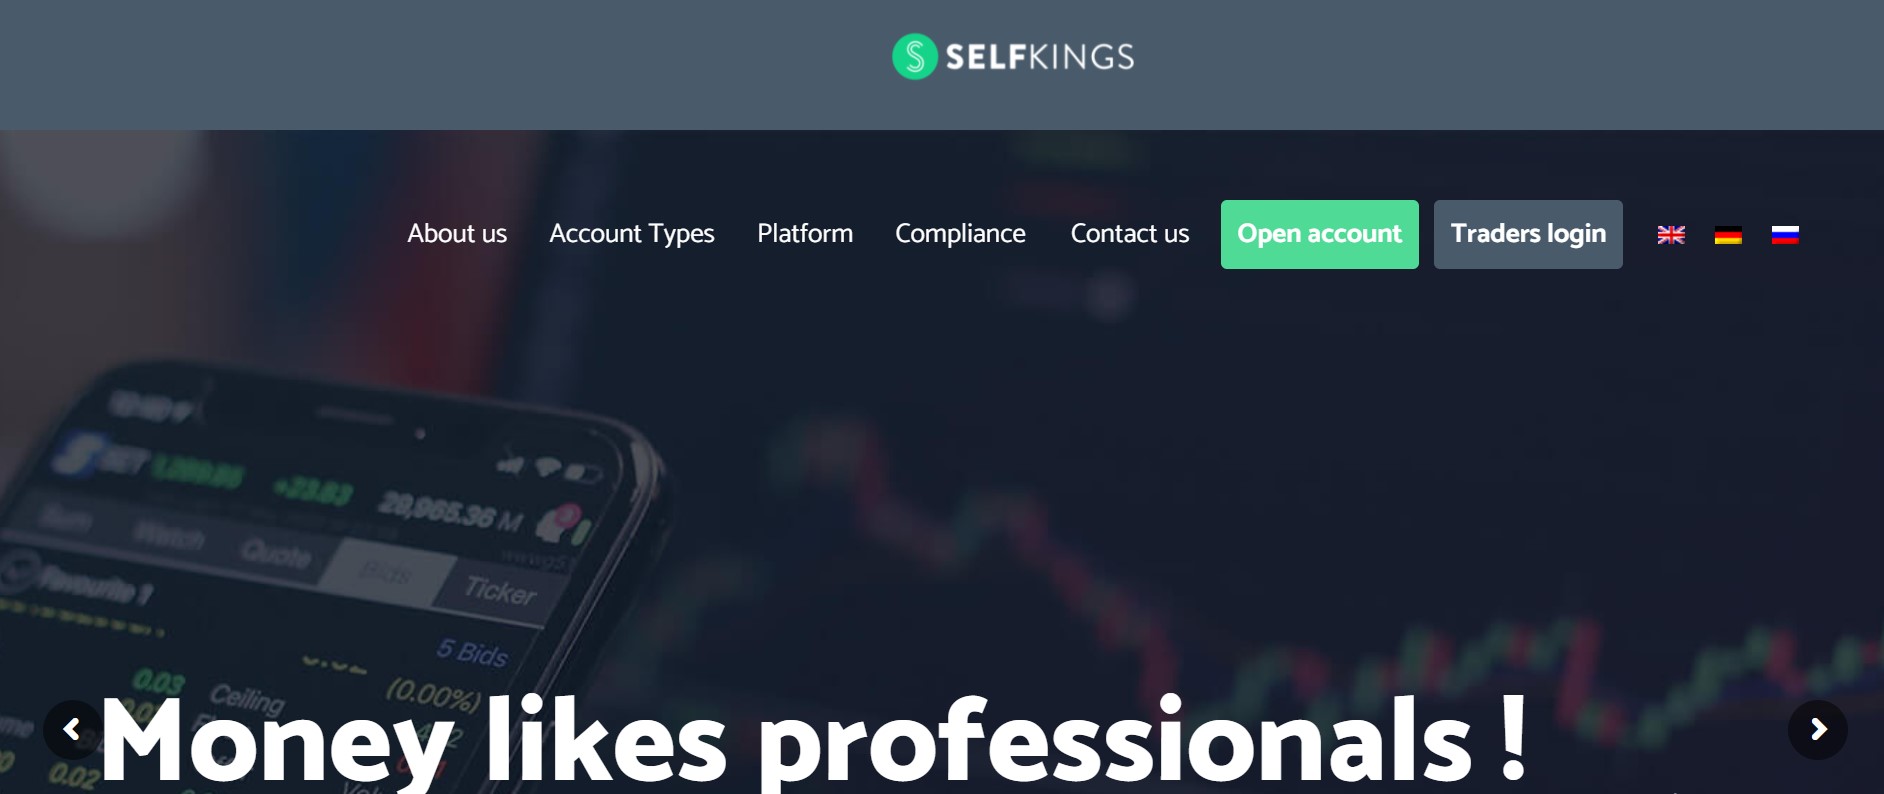 Selfkings website